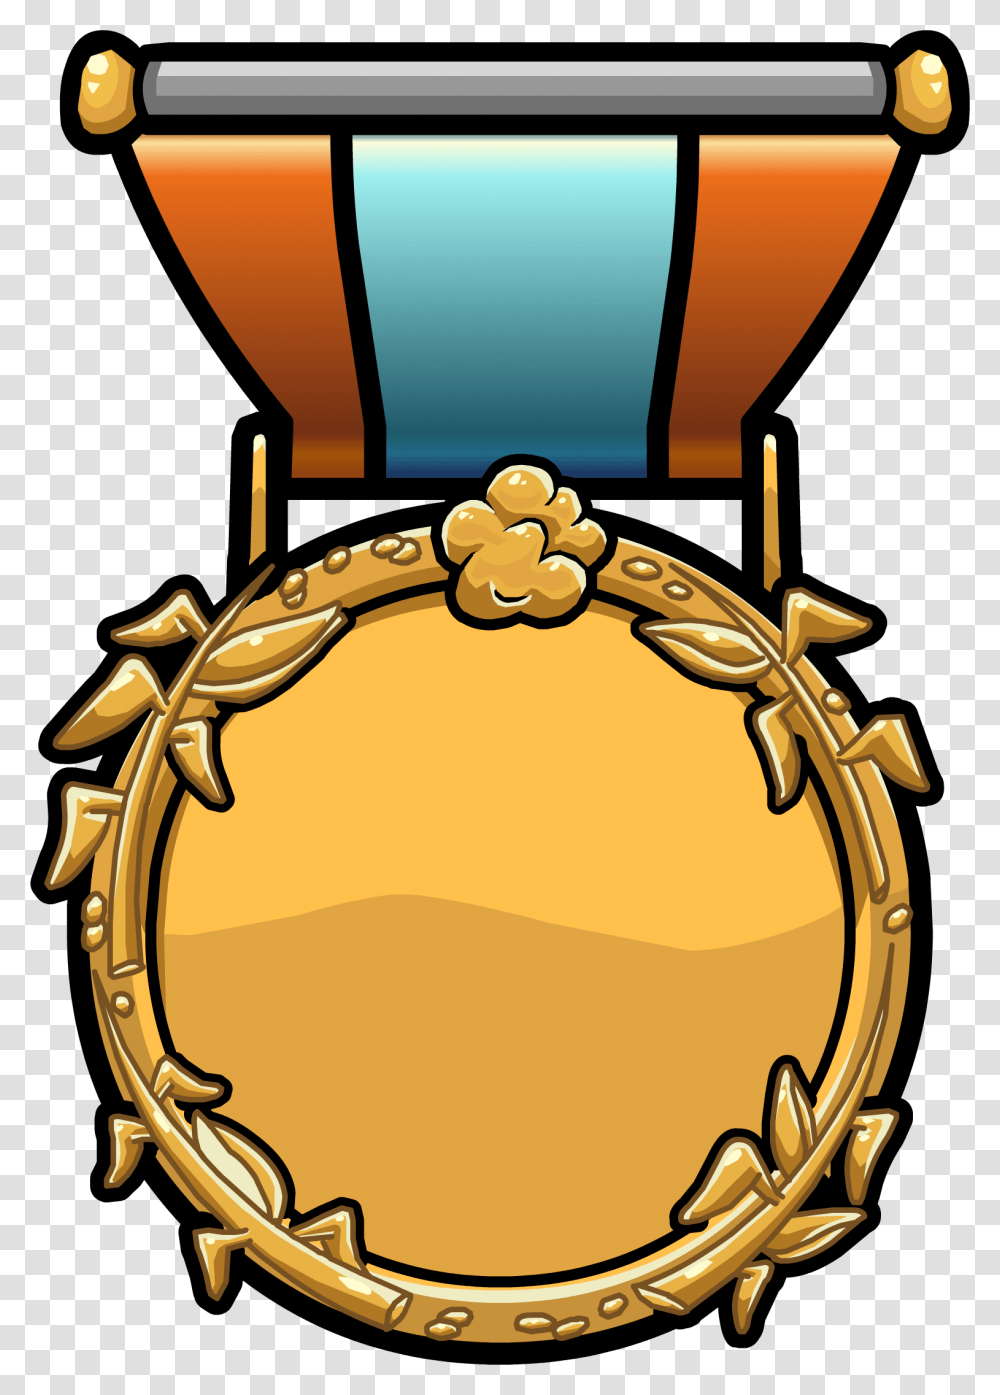 Medal Artwork Steamboat Fleur De Lis Coat Of Arms Medal Retro, Gold, Trophy, Bracelet, Jewelry Transparent Png